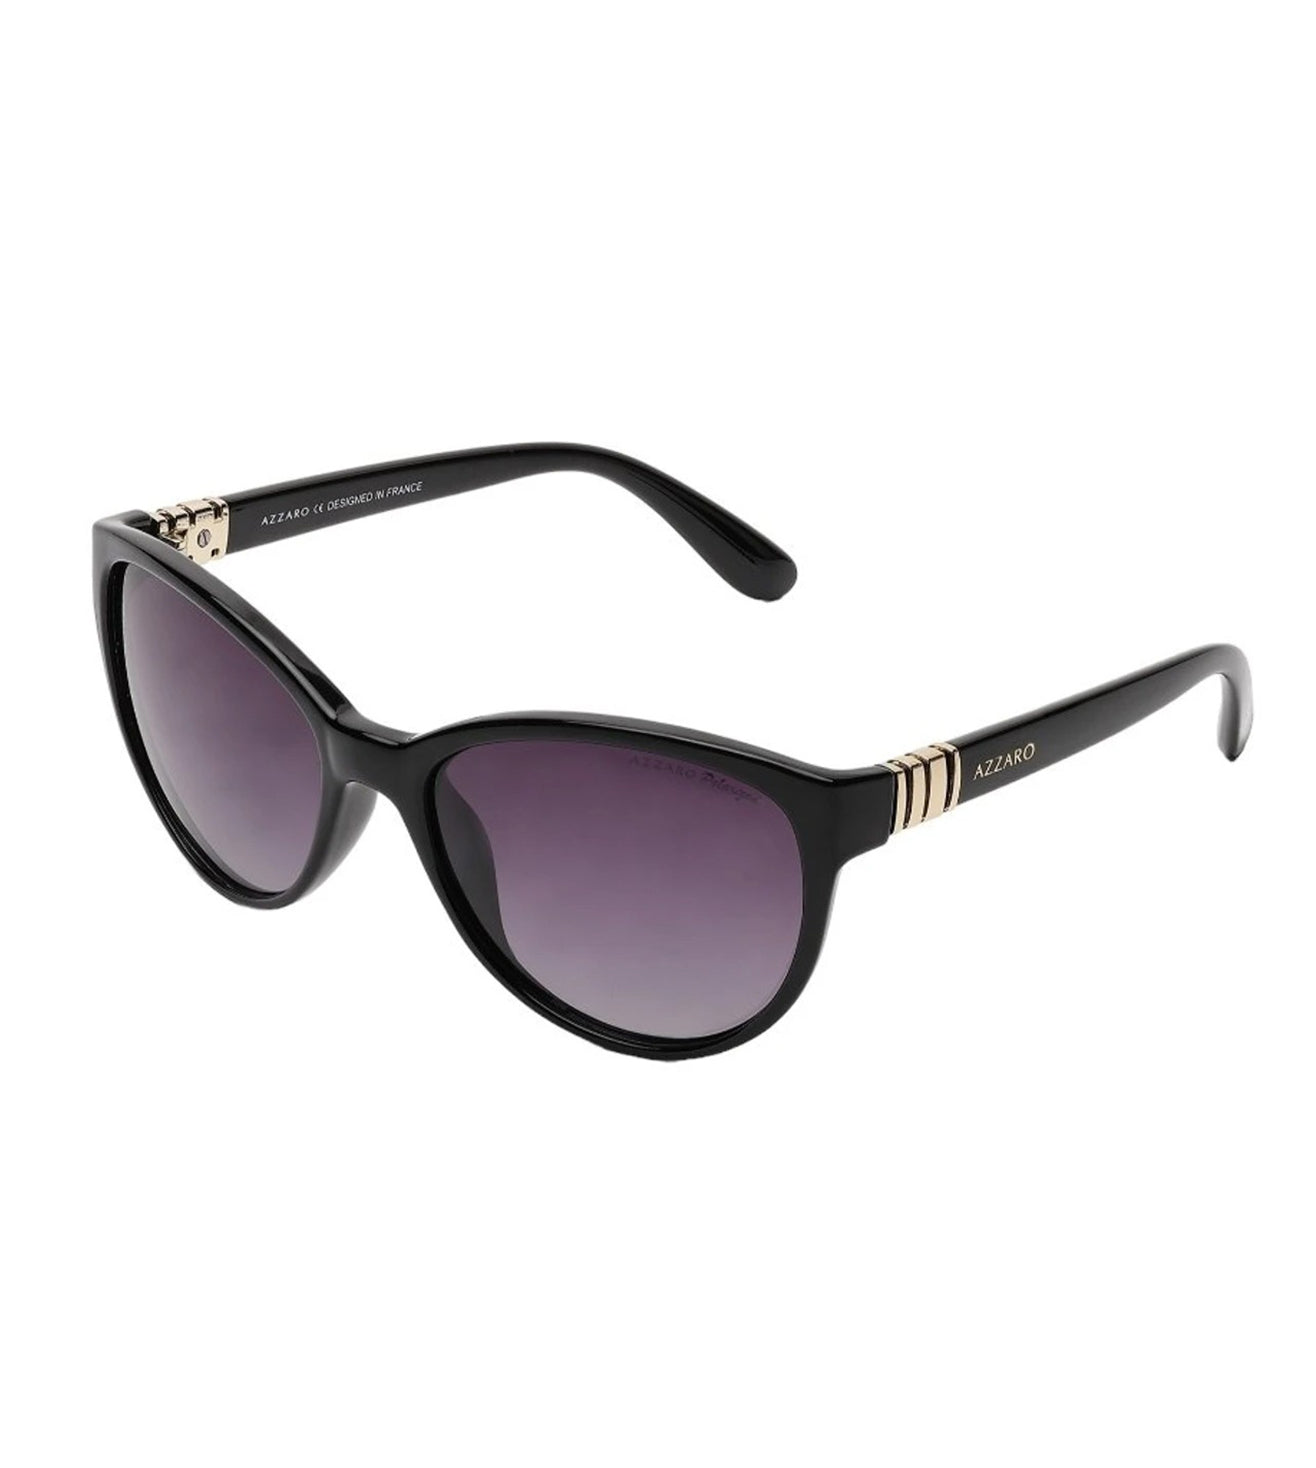 Azzaro Women's Black Cat-eye Sunglasses